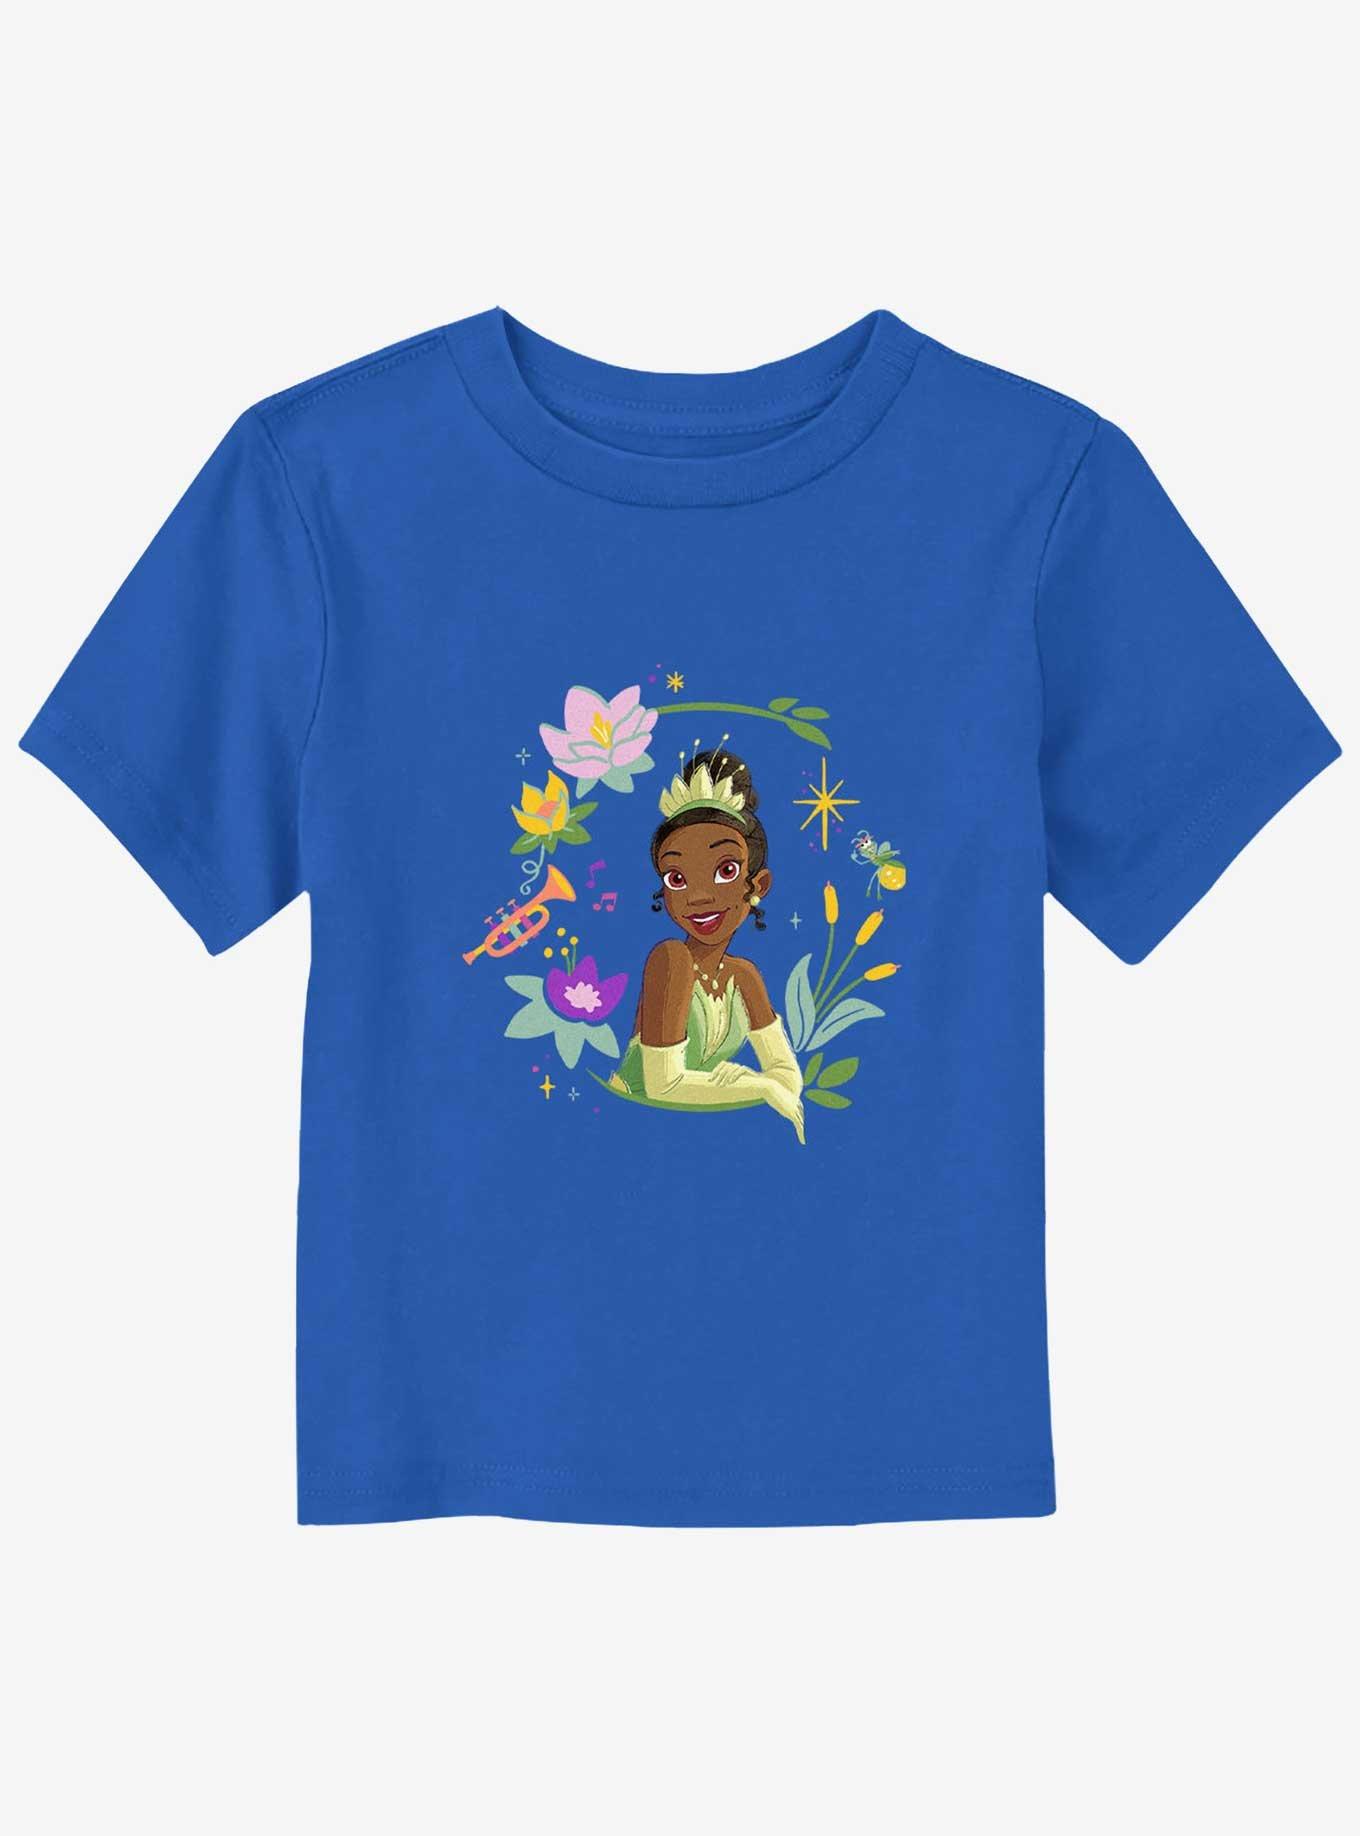 Disney Princesses Tiana Bust Toddler T-Shirt, ROYAL, hi-res